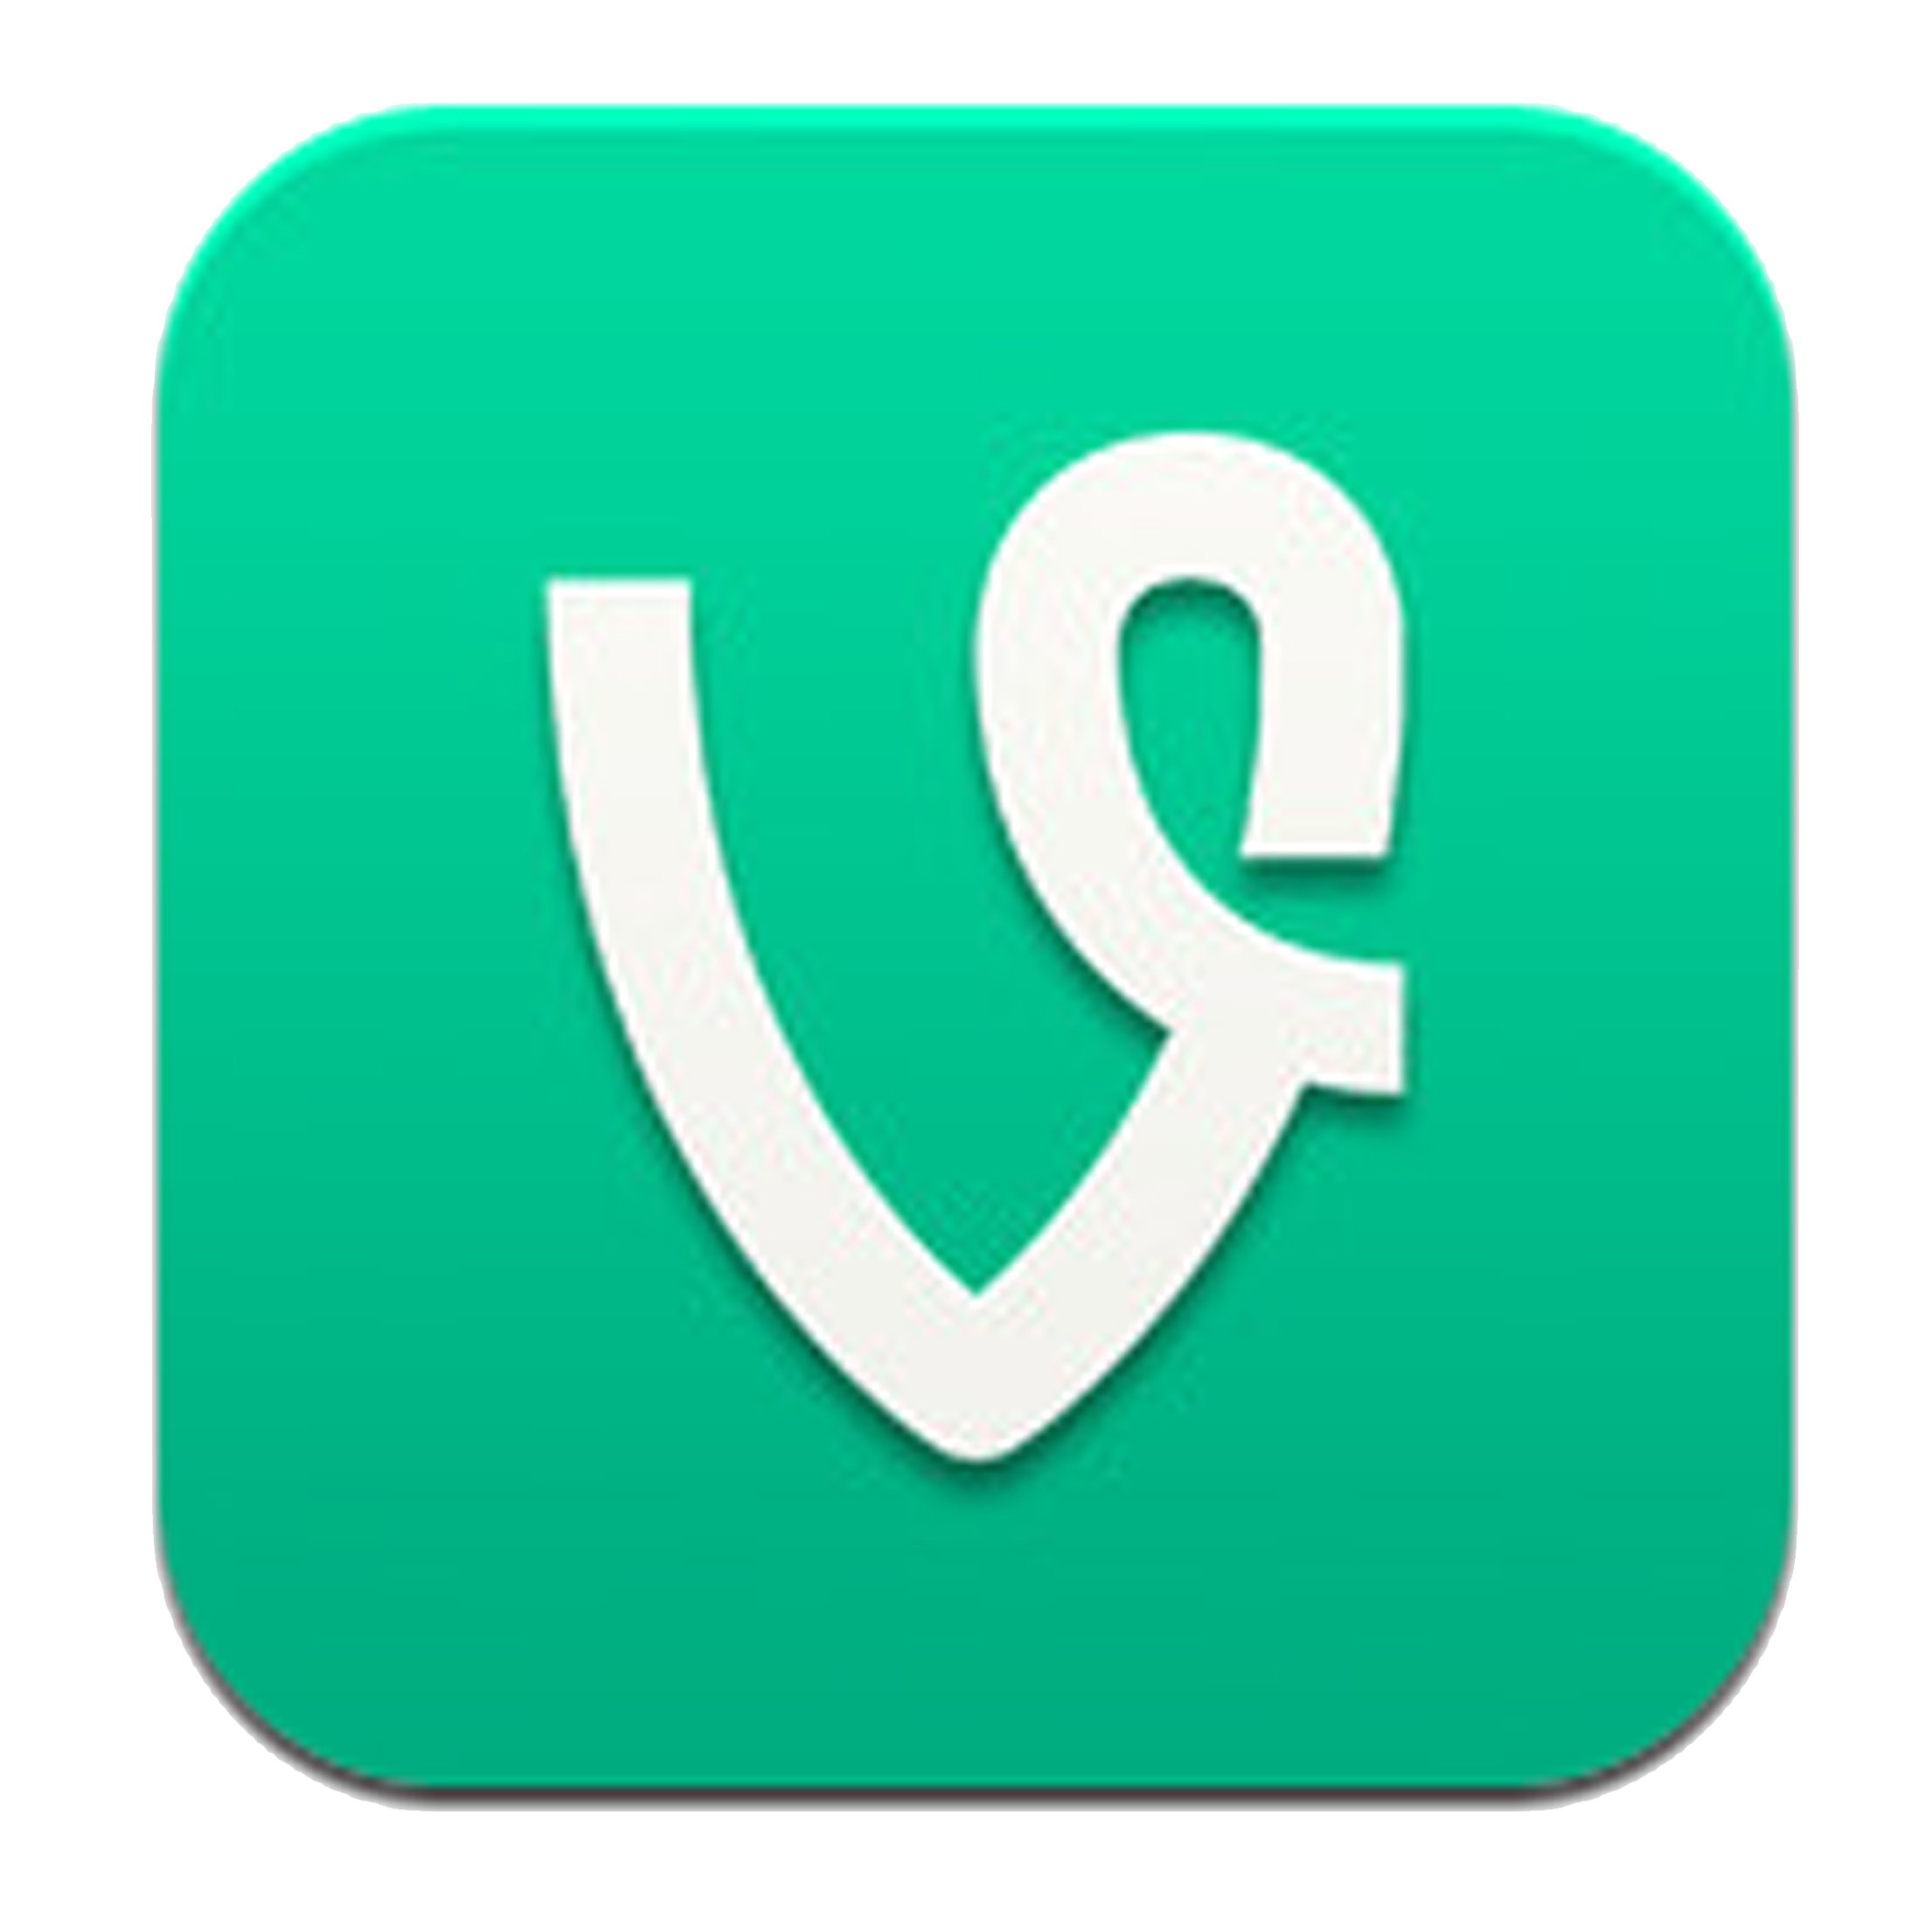 Vine App Logo